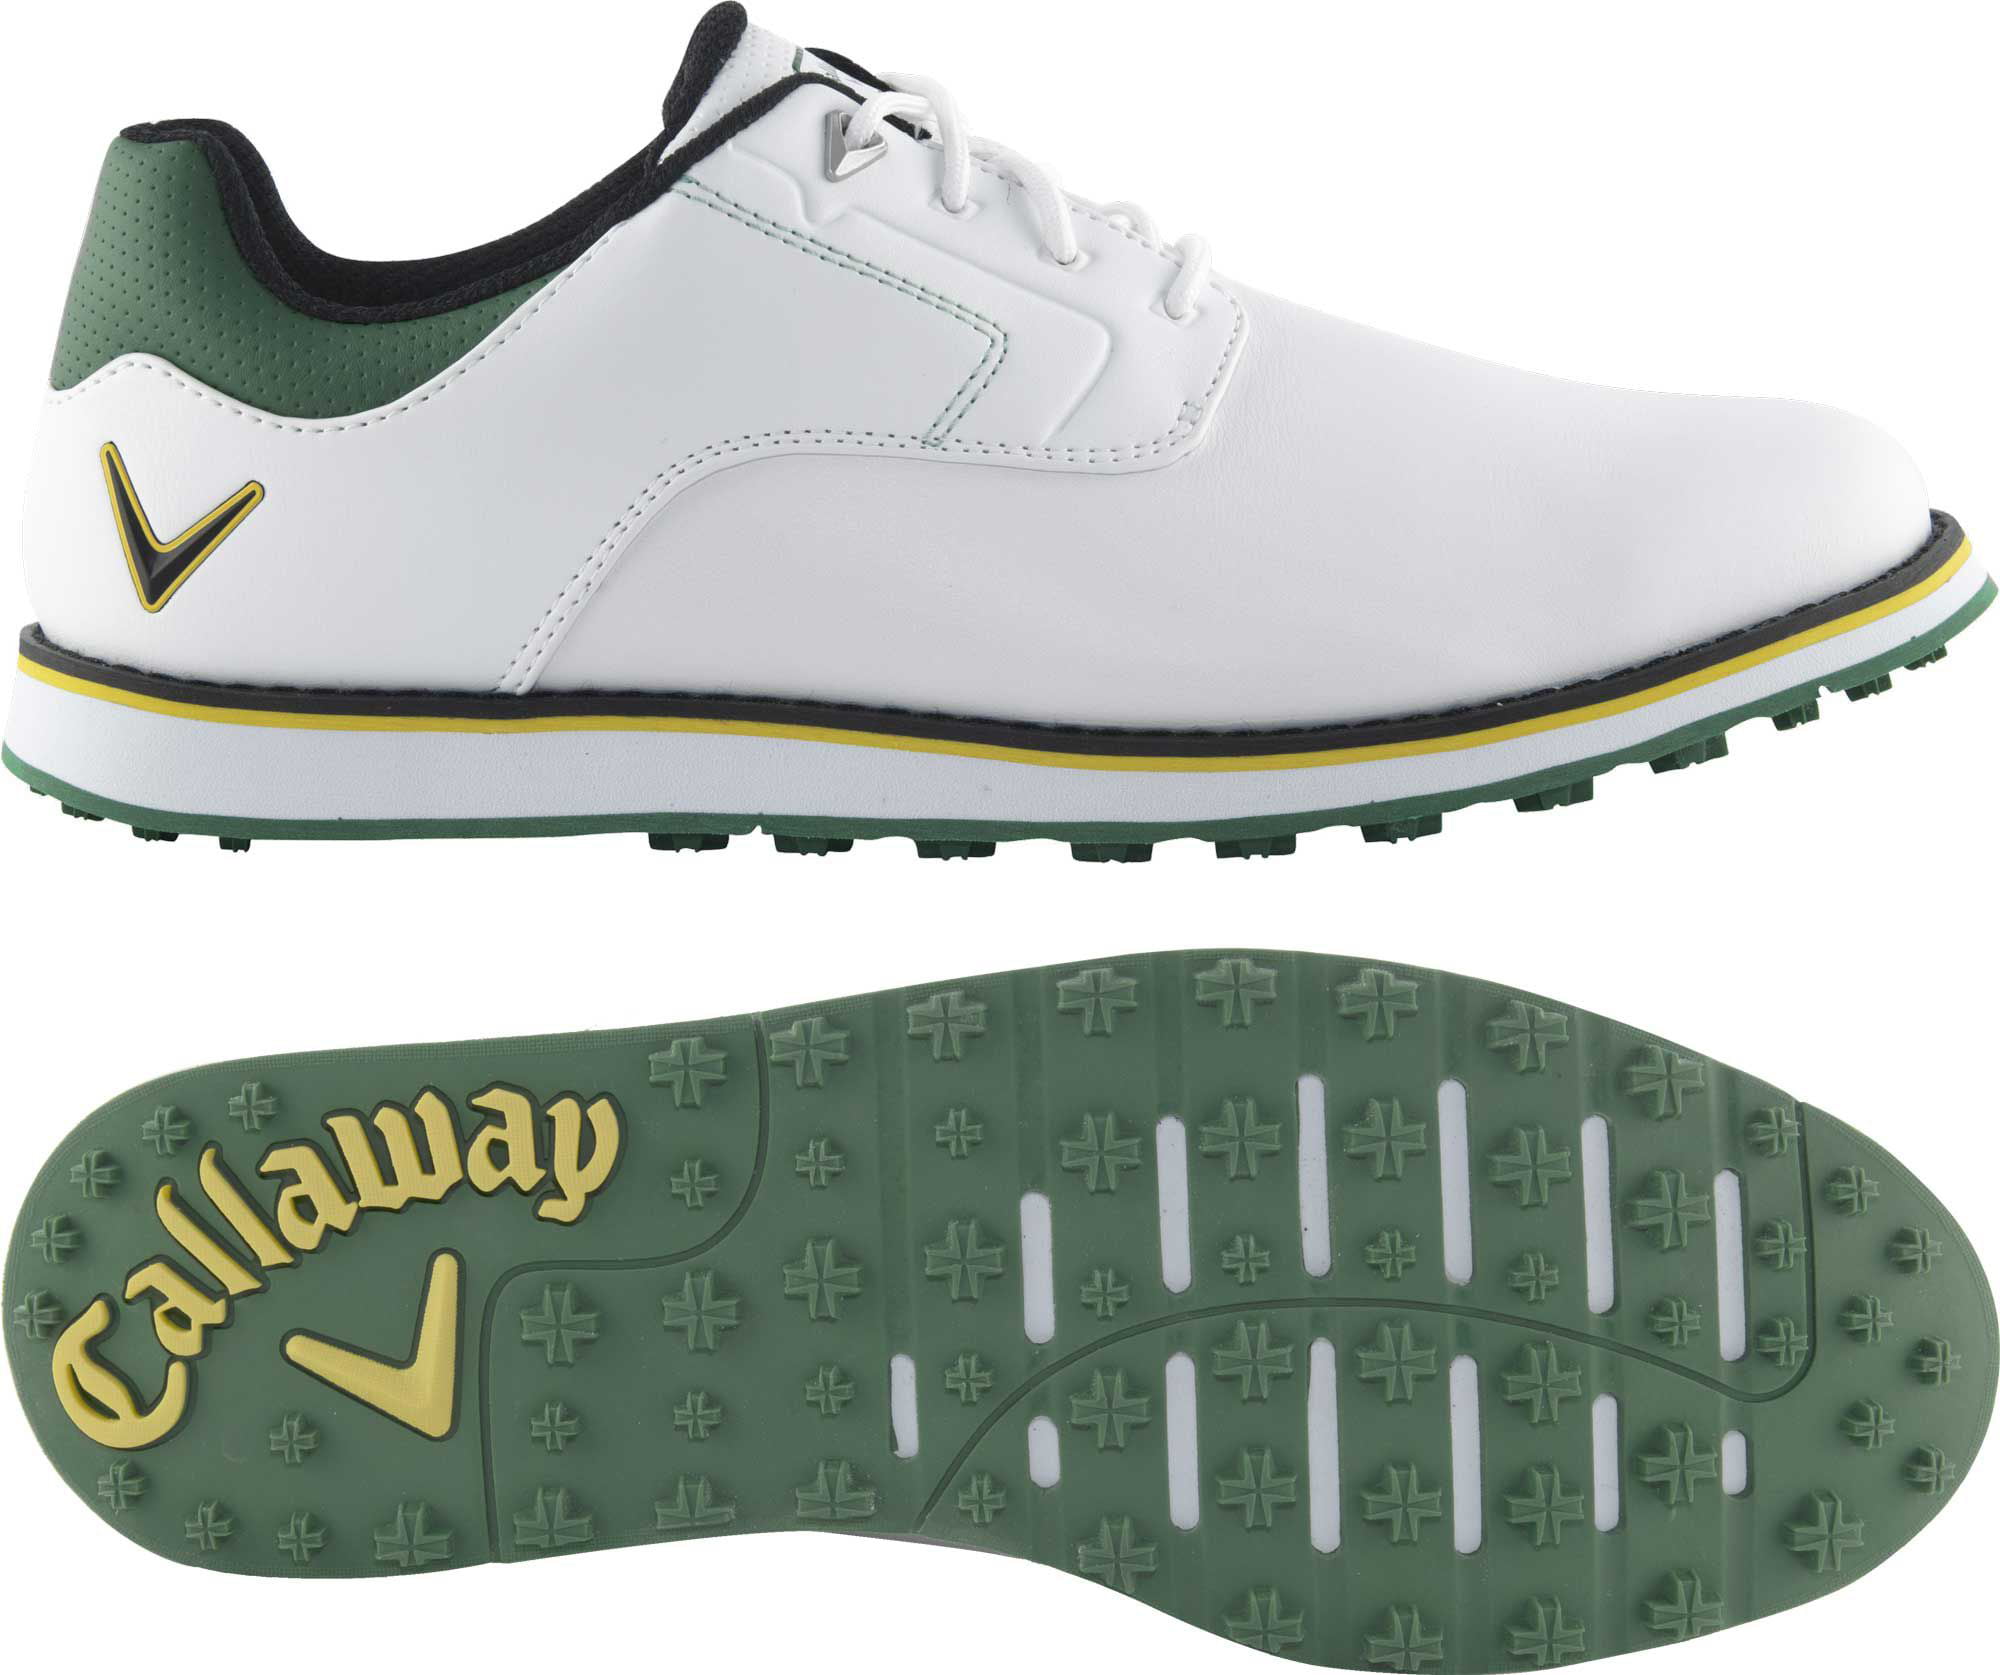 Callaway Men's La Jolla SL Golf Shoes 